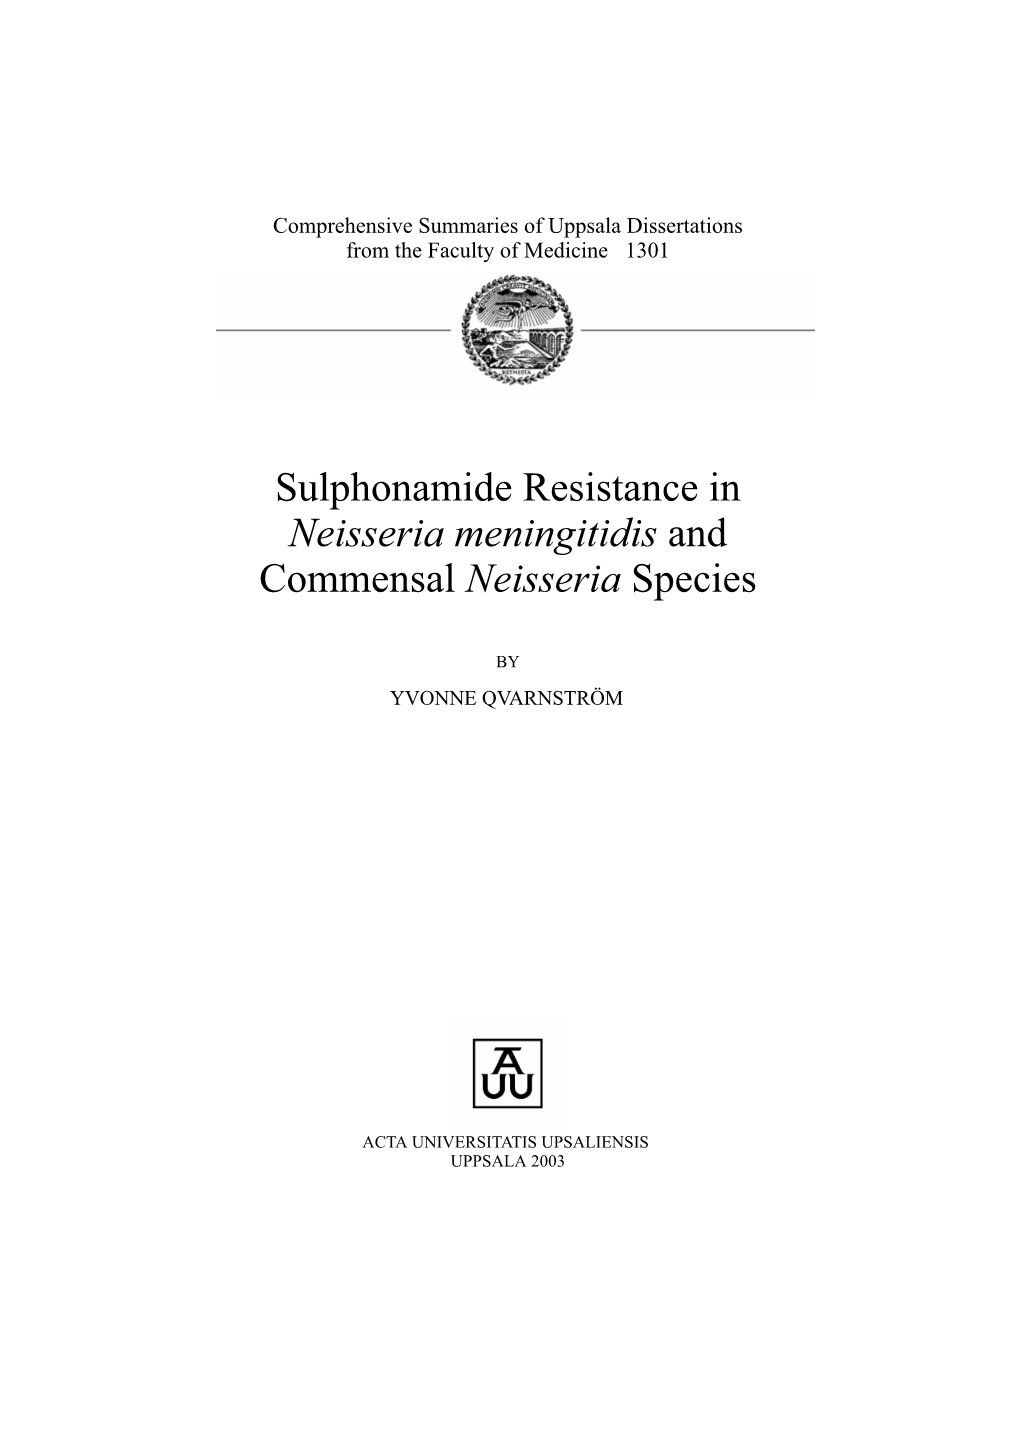 Neisseria Meningitidis and Commensal Neisseria Species